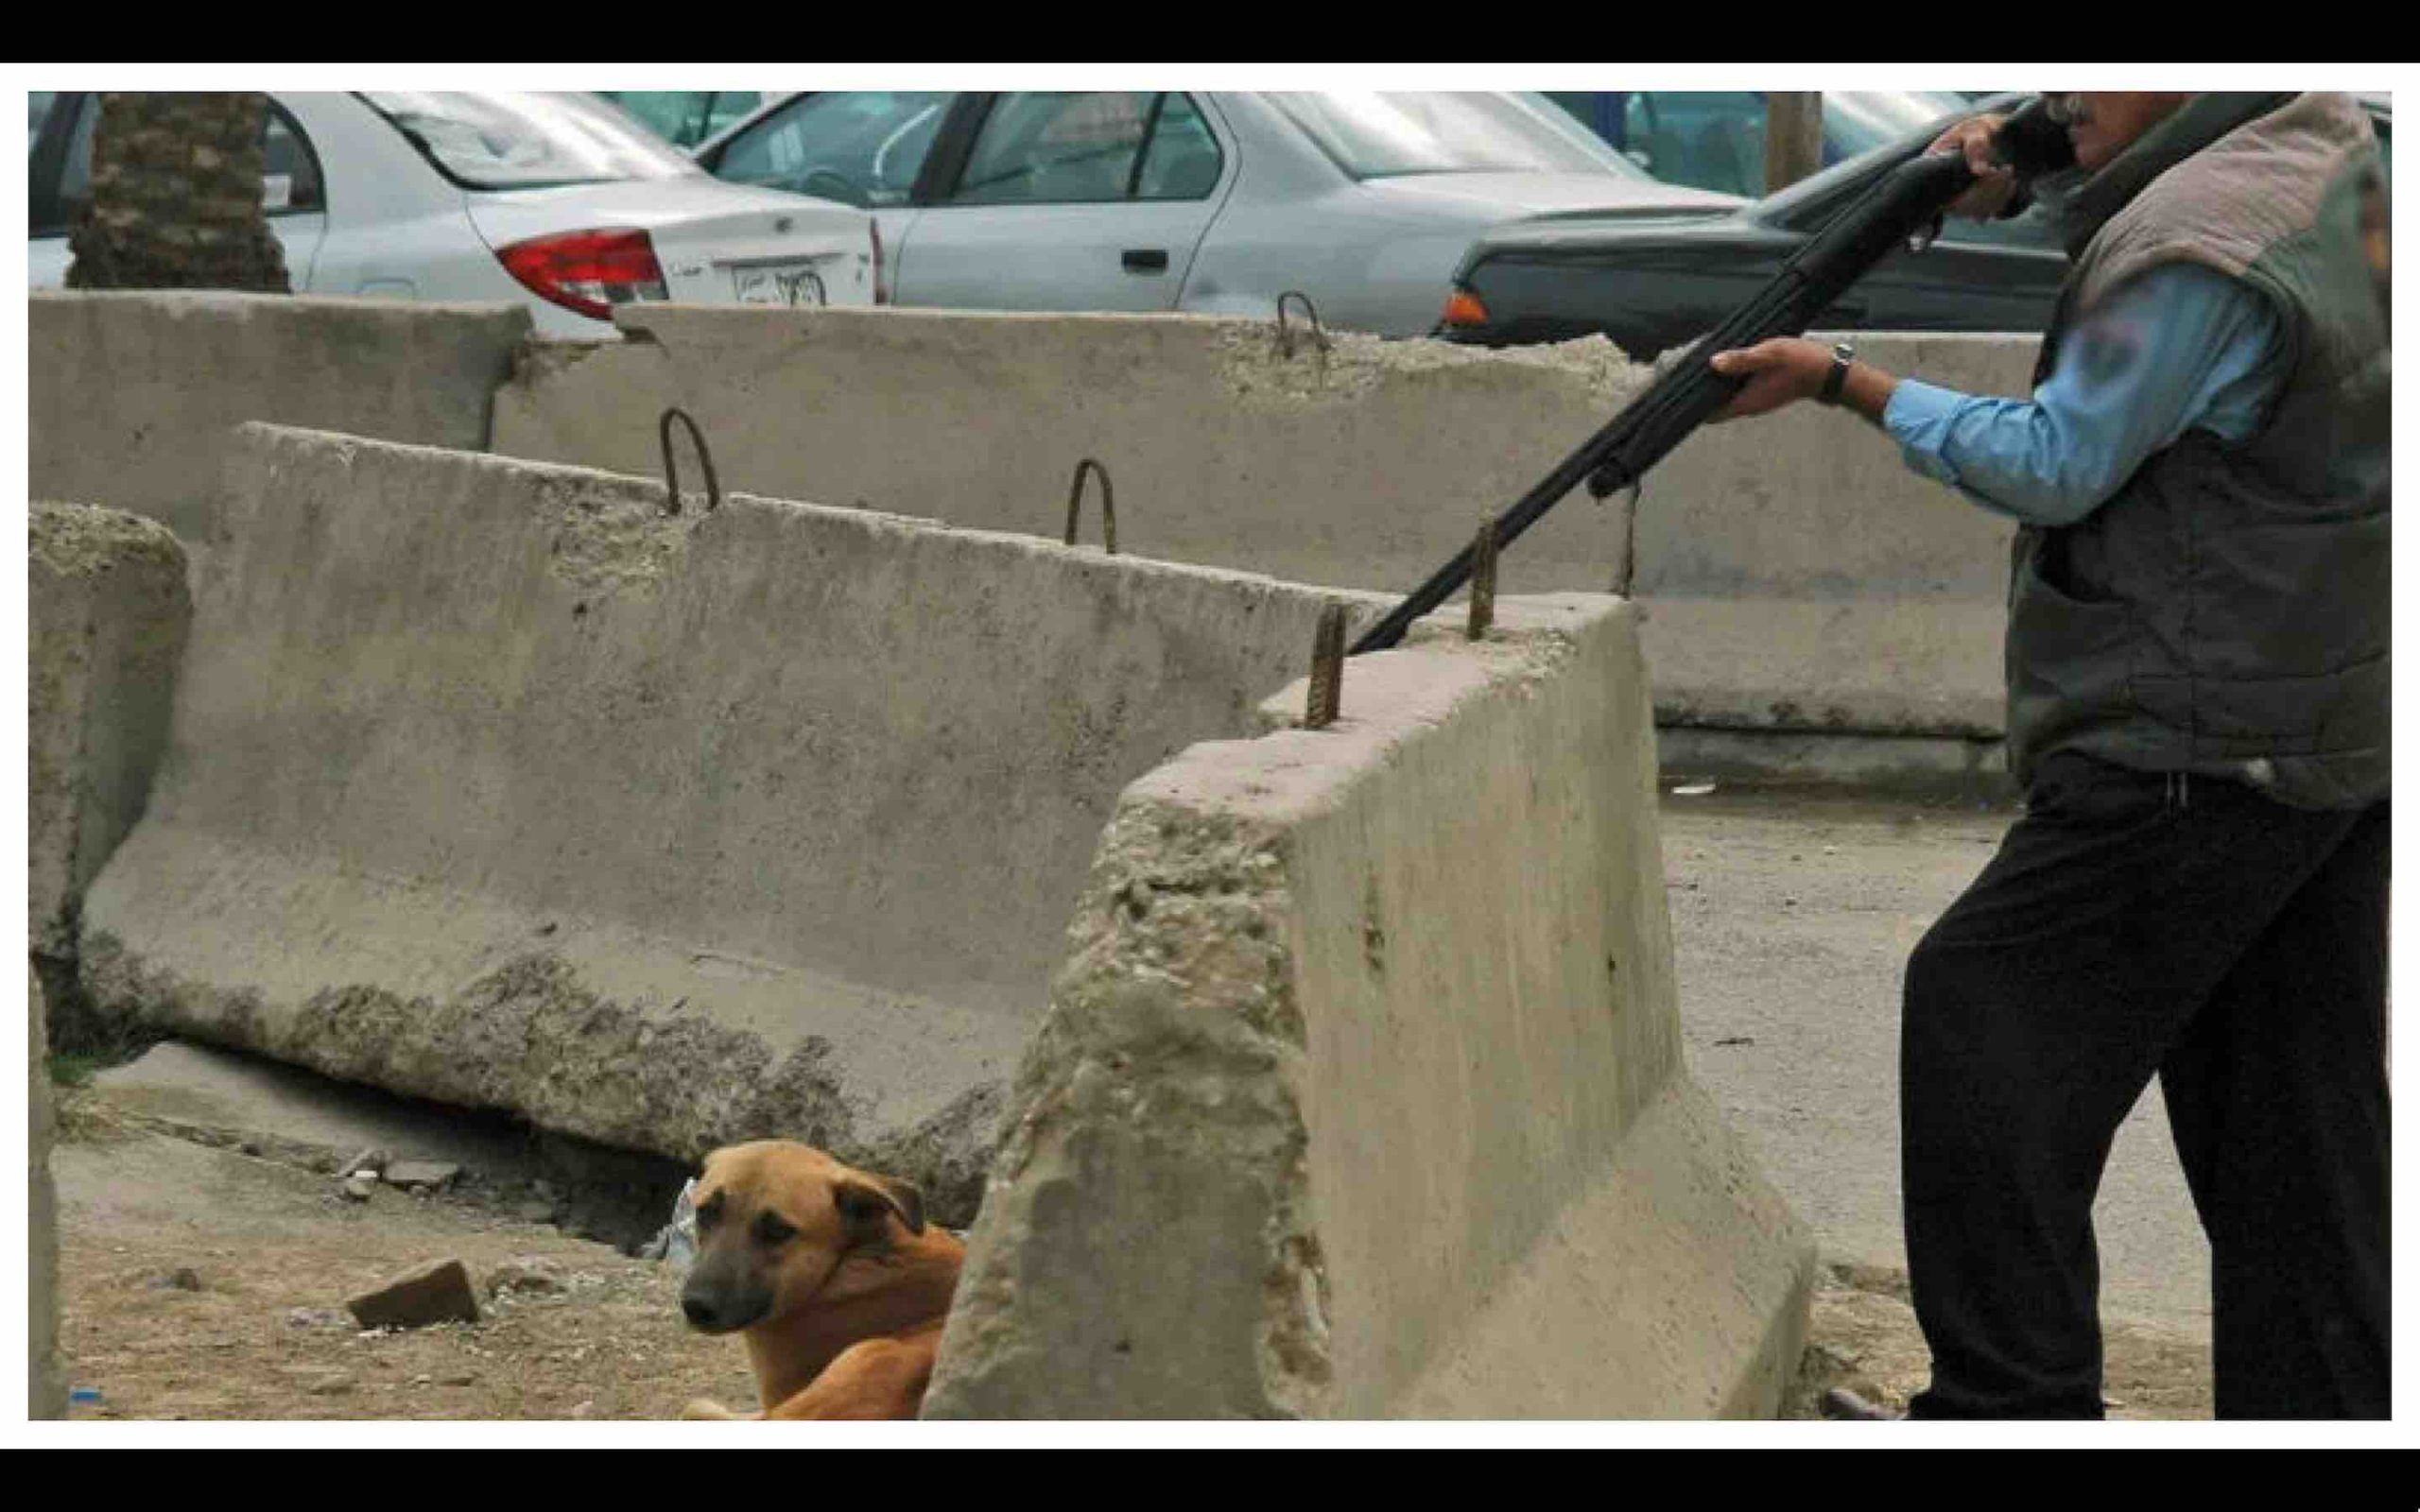 opération controversée d'élimination (abattage) des chiens errants qui envahissent la ville